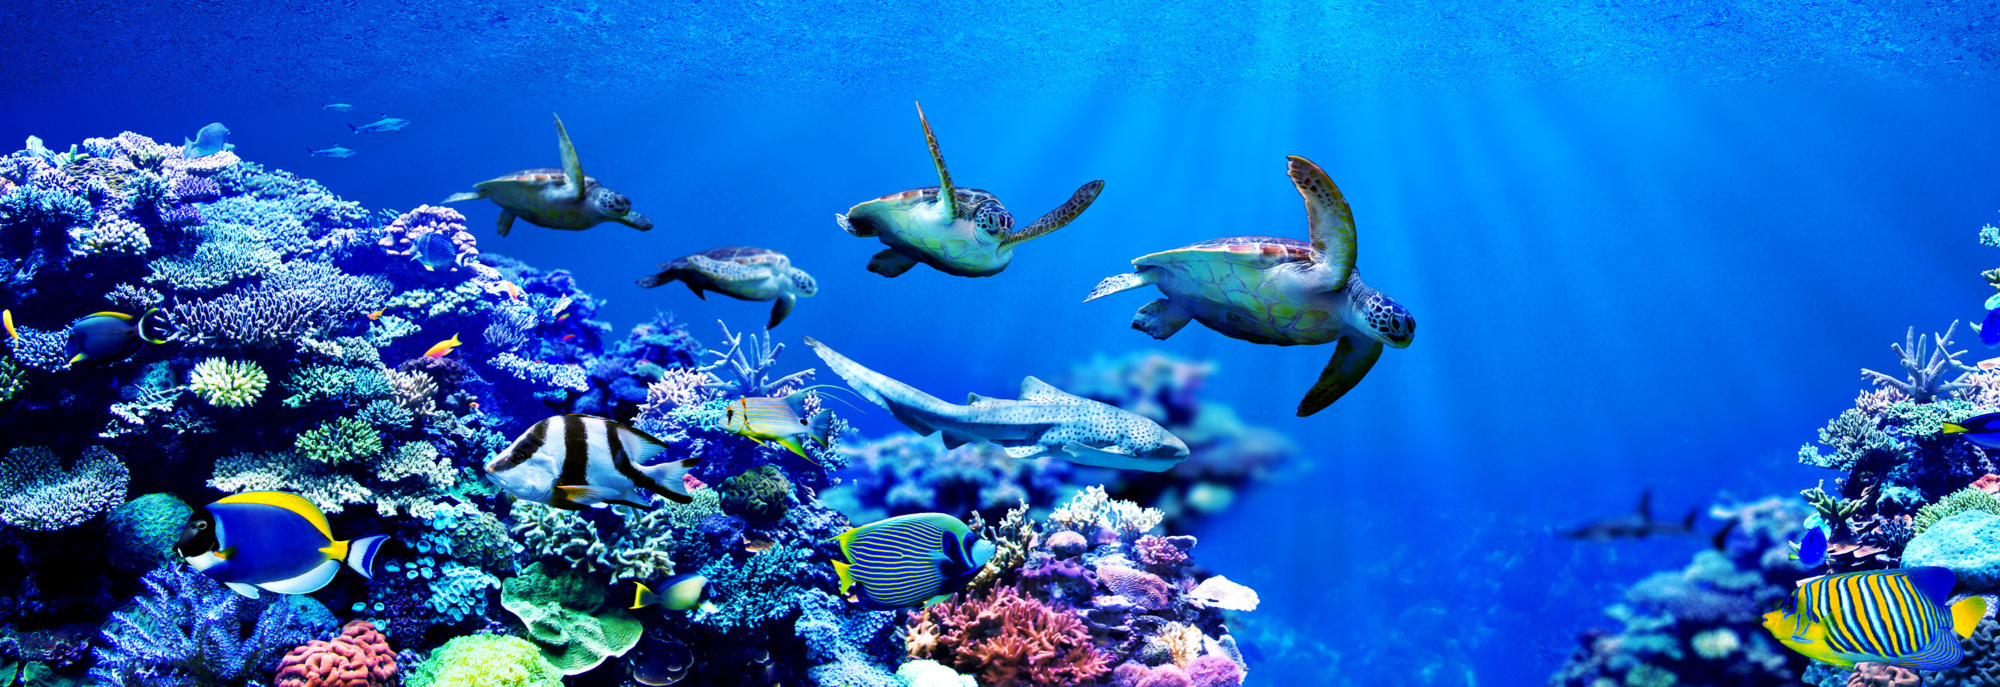 Le blanchissement des coraux est une conséquence des activités humaines. ©  Chonlasub, Adobe Stock